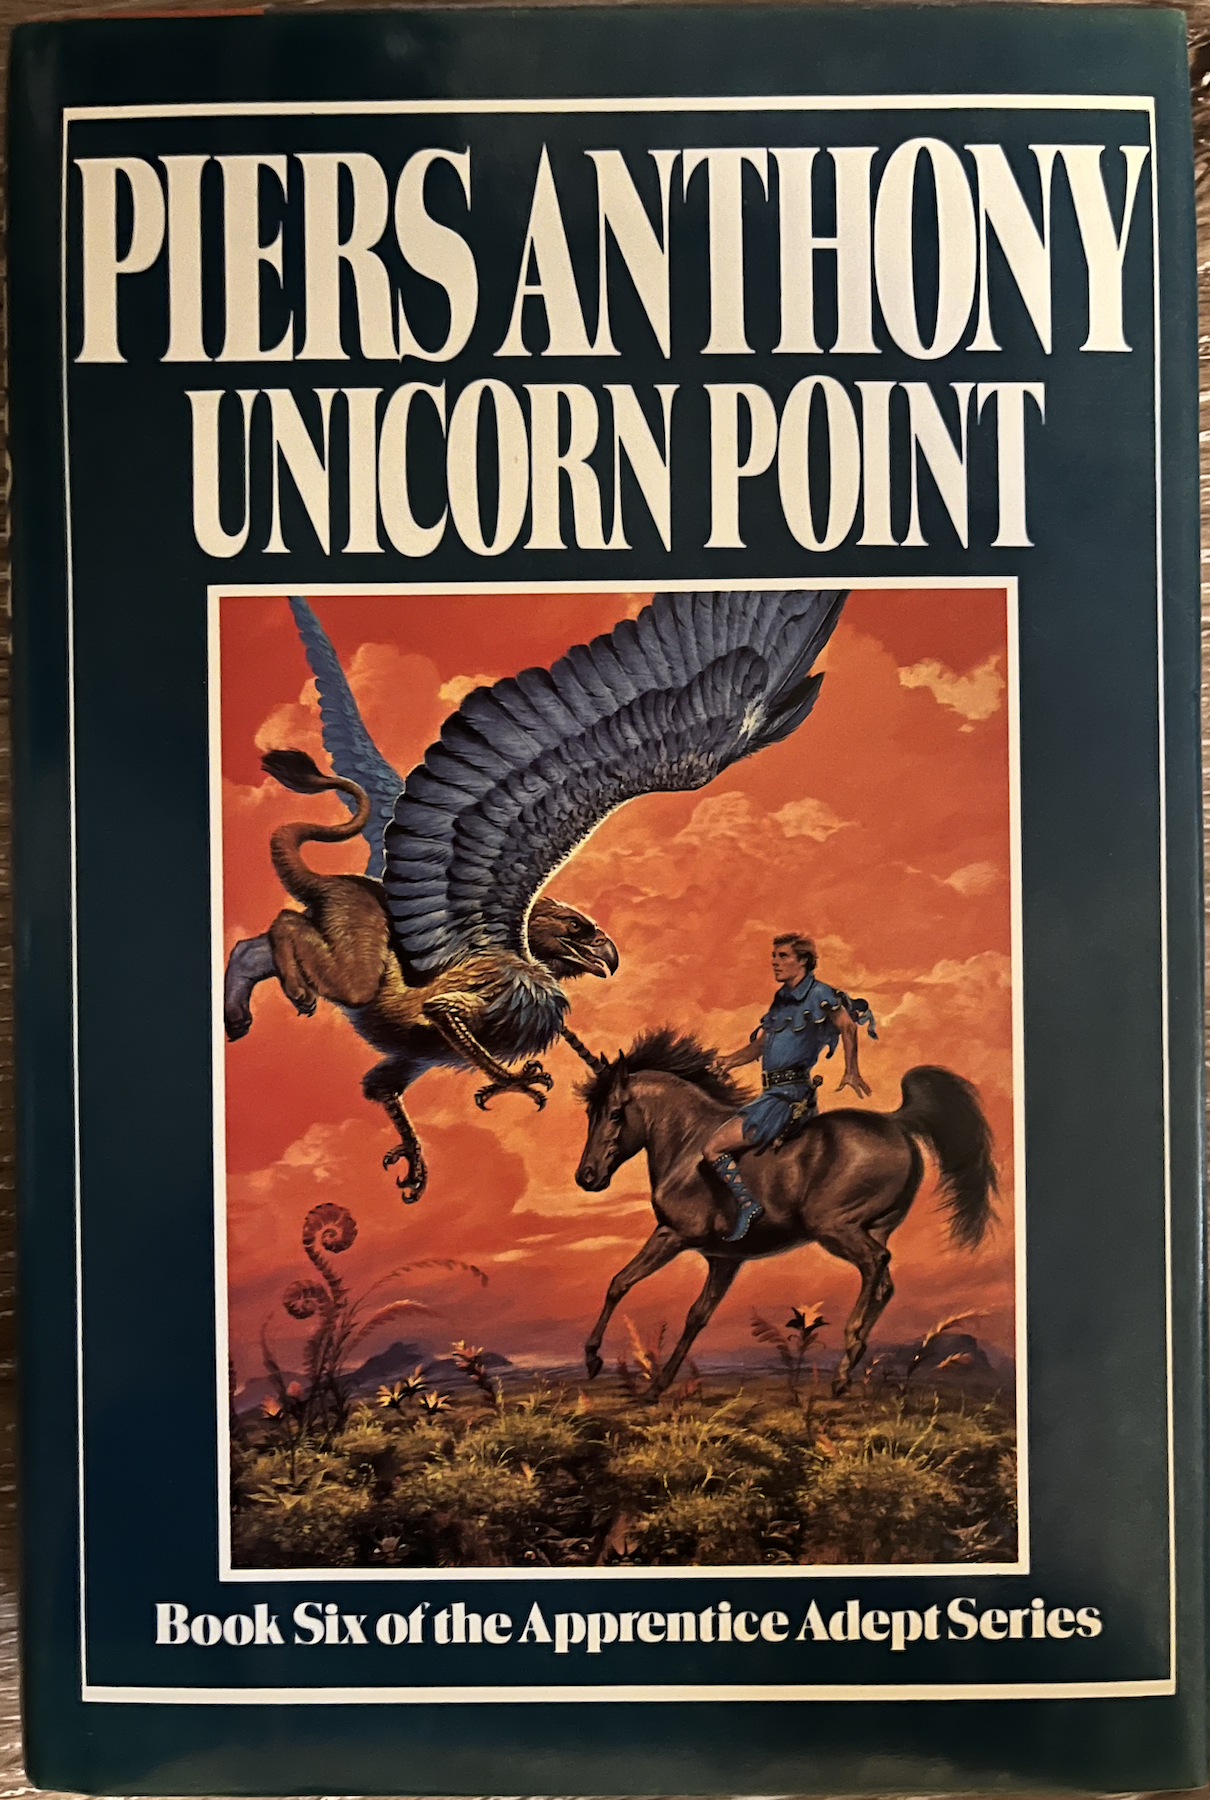 Unicorn Point hardback cover